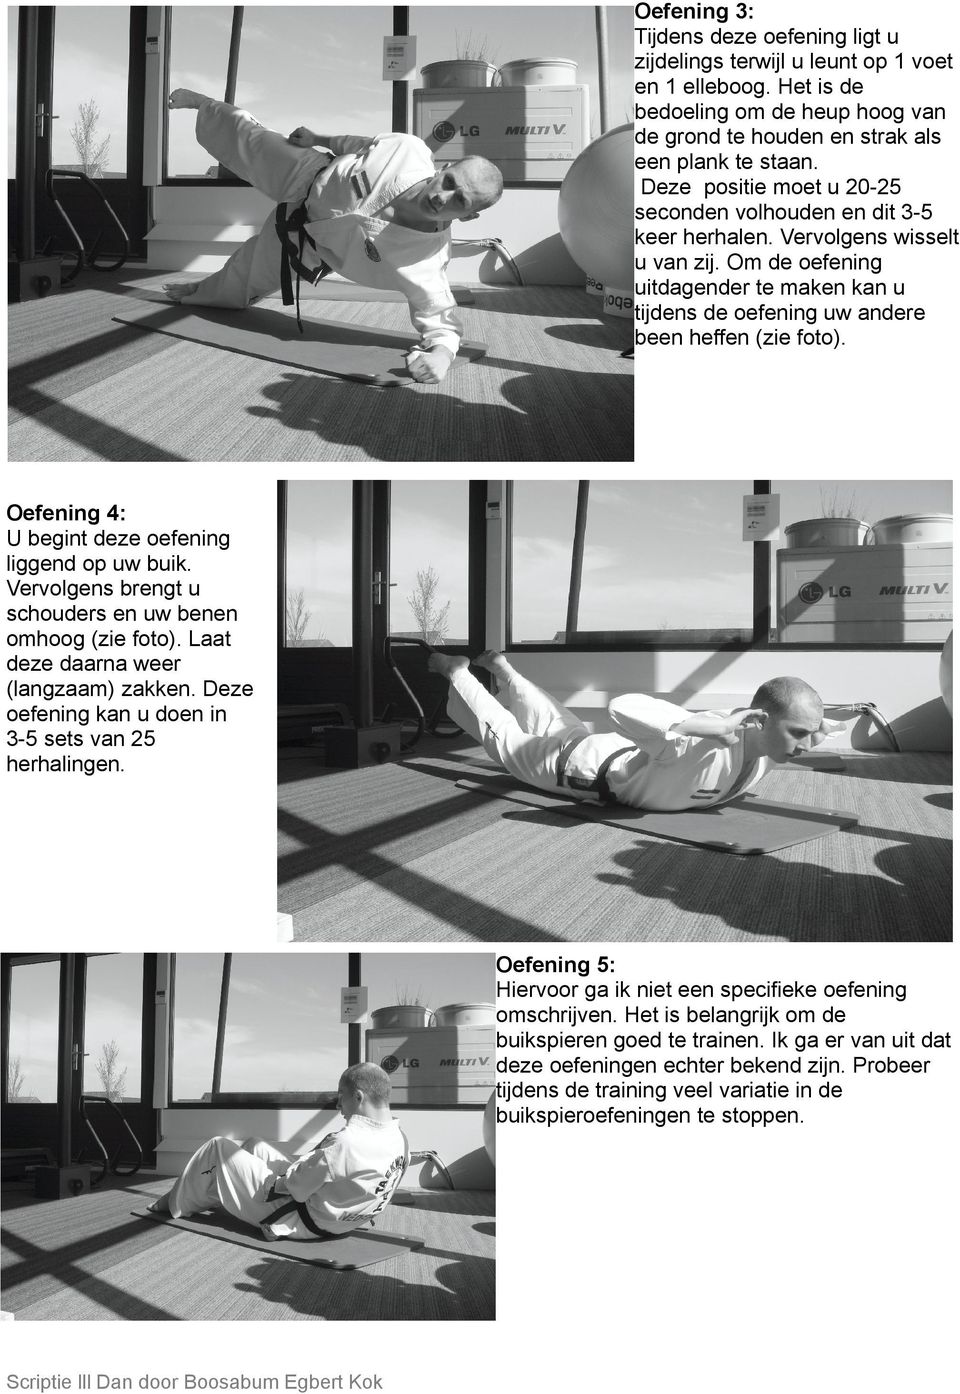 Oefening 4: U begint deze oefening liggend op uw buik. Vervolgens brengt u schouders en uw benen omhoog (zie foto). Laat deze daarna weer (langzaam) zakken.